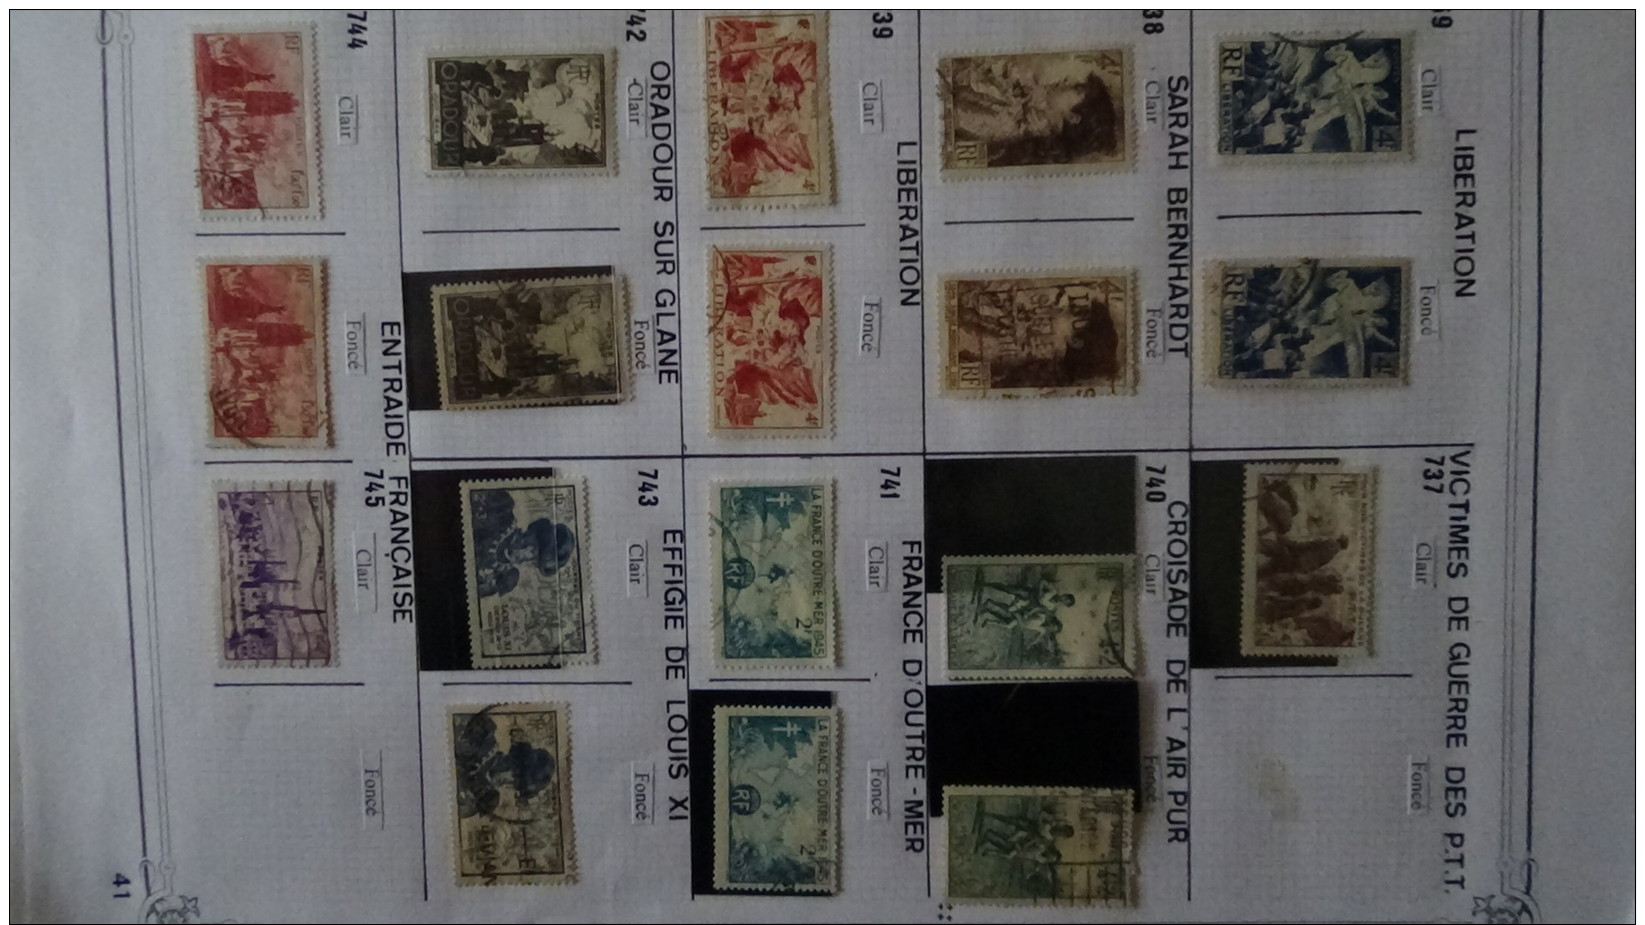 Très belle étude de variétés sur timbres oblitérés de France. Un travail de fourmis !!!